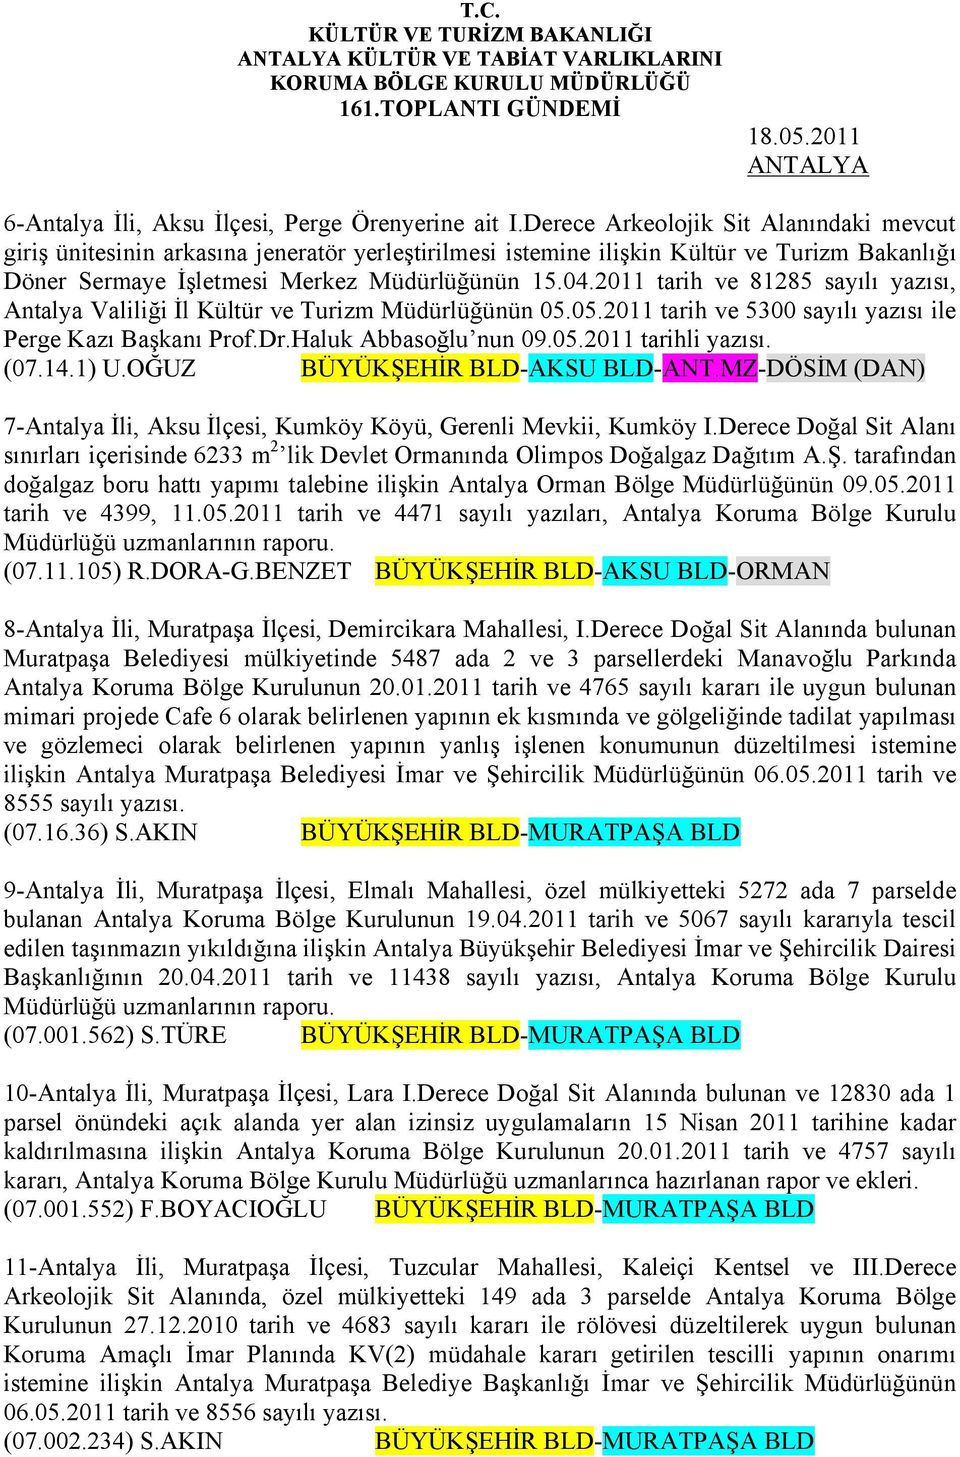 2011 tarih ve 81285 sayılı yazısı, Antalya Valiliği İl Kültür ve Turizm Müdürlüğünün 05.05.2011 tarih ve 5300 sayılı yazısı ile Perge Kazı Başkanı Prof.Dr.Haluk Abbasoğlu nun 09.05.2011 tarihli yazısı.